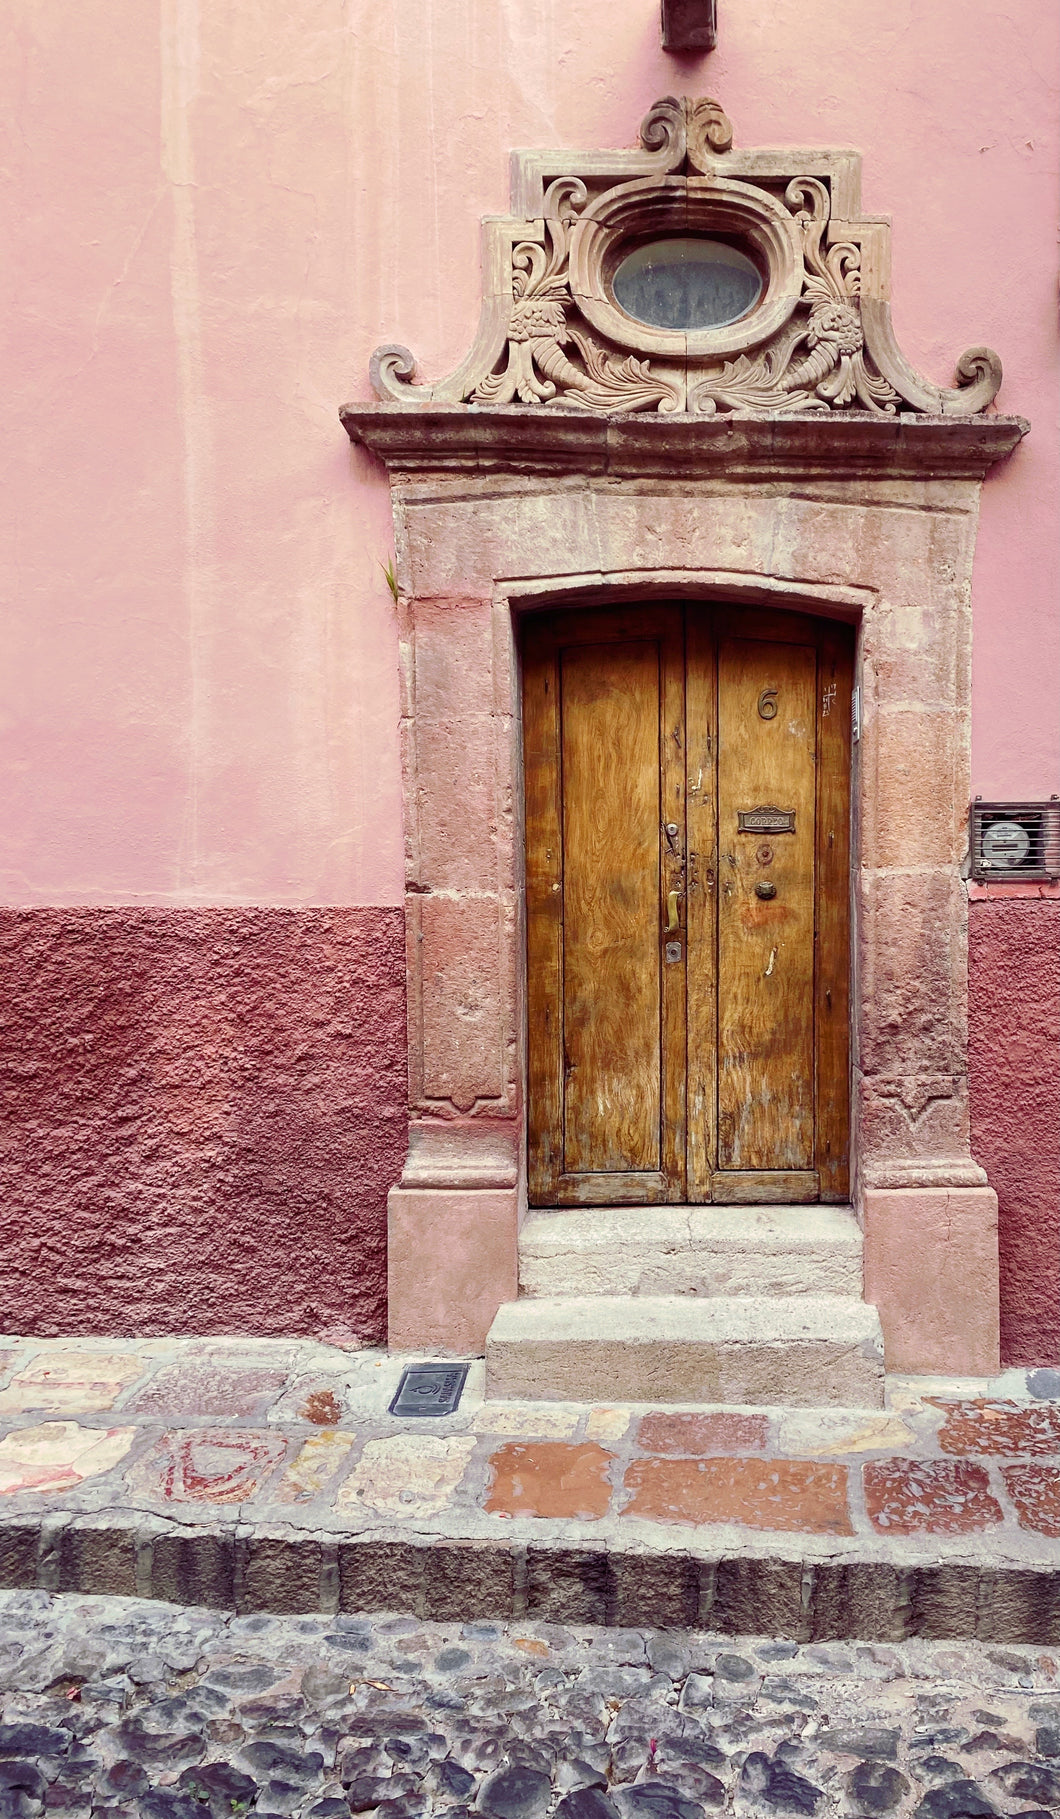 Pink House, San Miguel De Allende, Mexico. Fine Art Print!